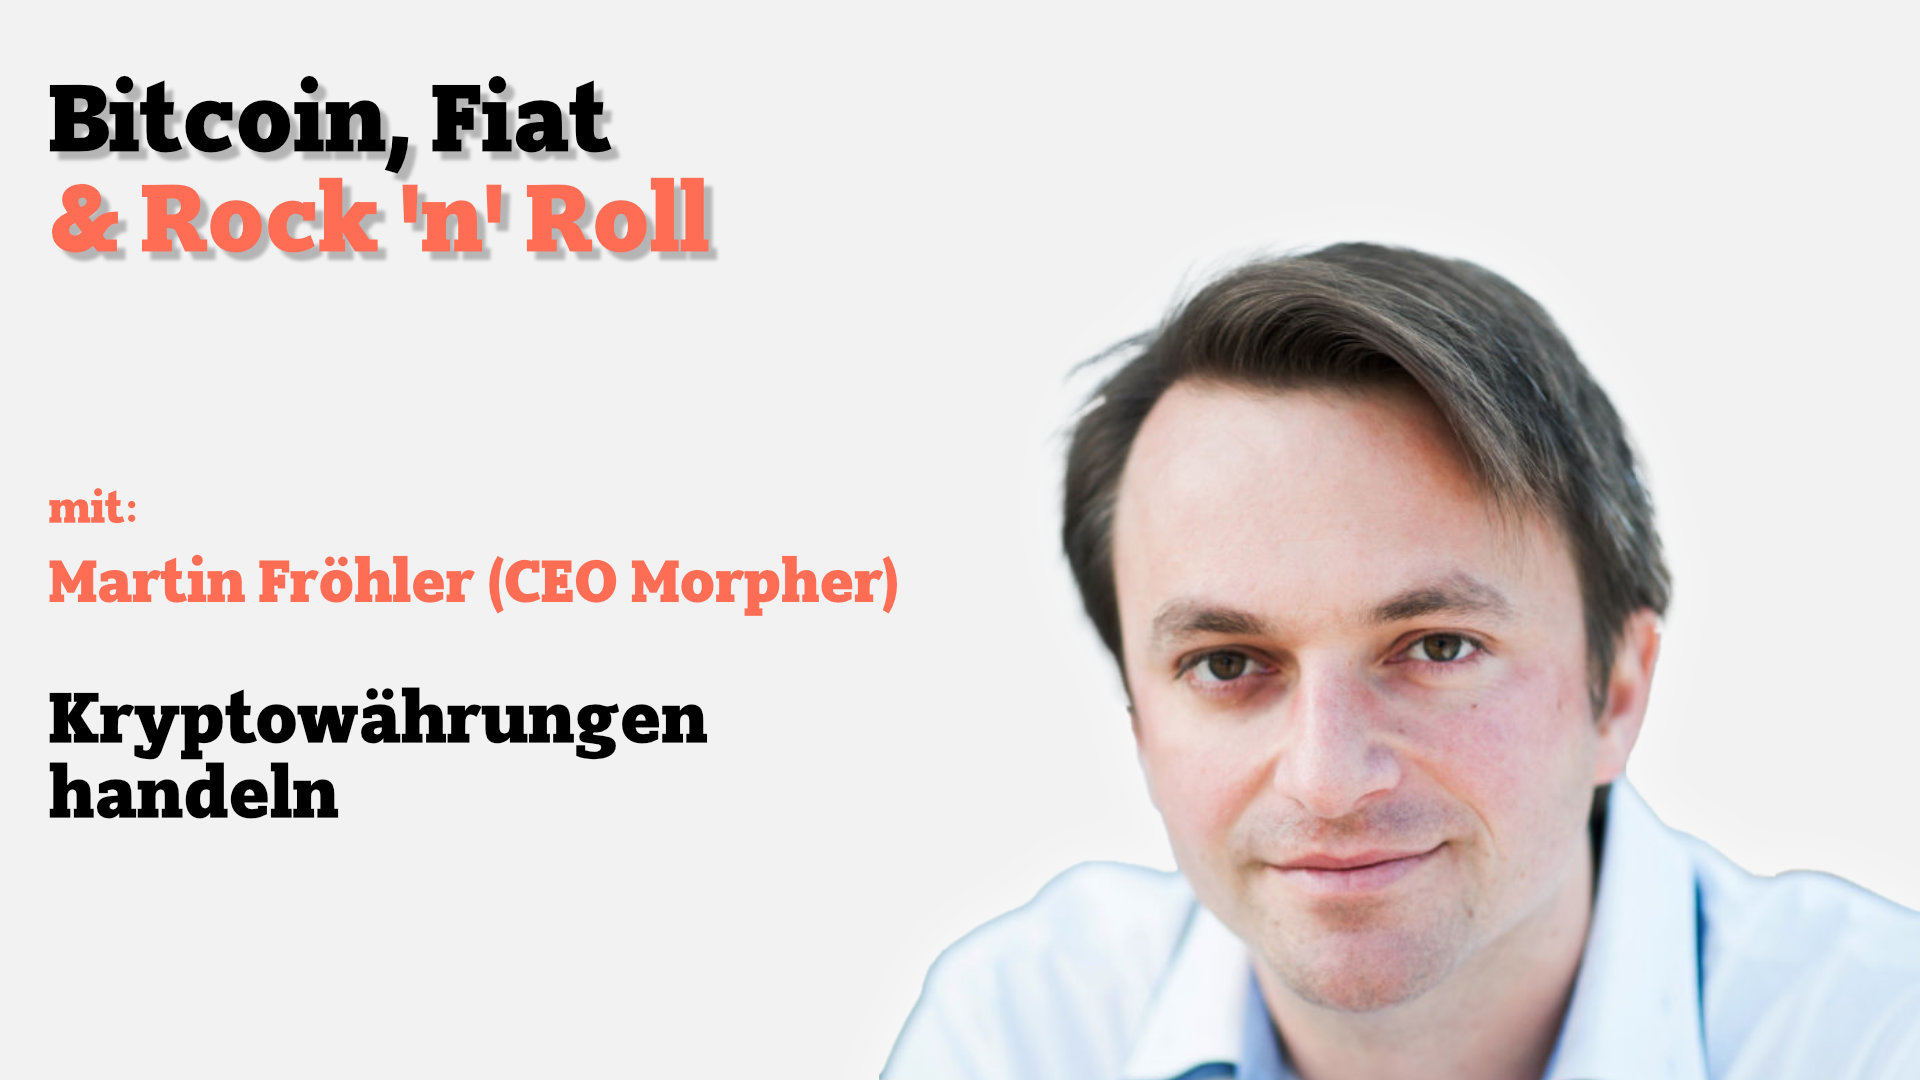 Kryptowährungen handeln mit Morpher-CEO Martin Fröhler - - Payment & Banking